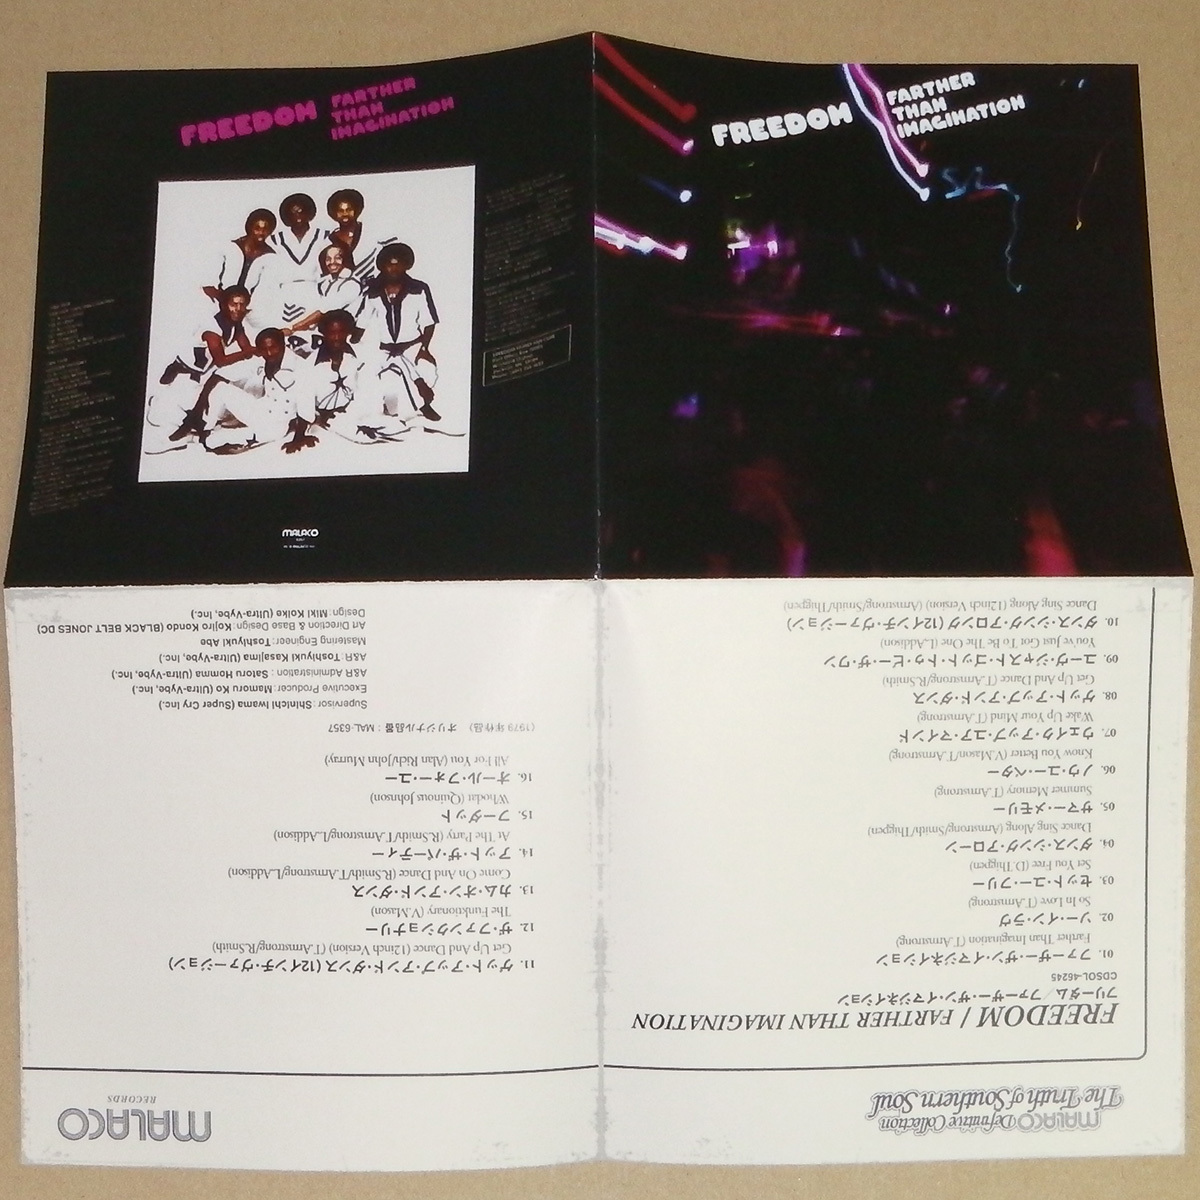 中古日本盤CD Freedom Farther Than Imagination Bonus +7 Japan Edition [CDSOL-46245] Get Up And Dance